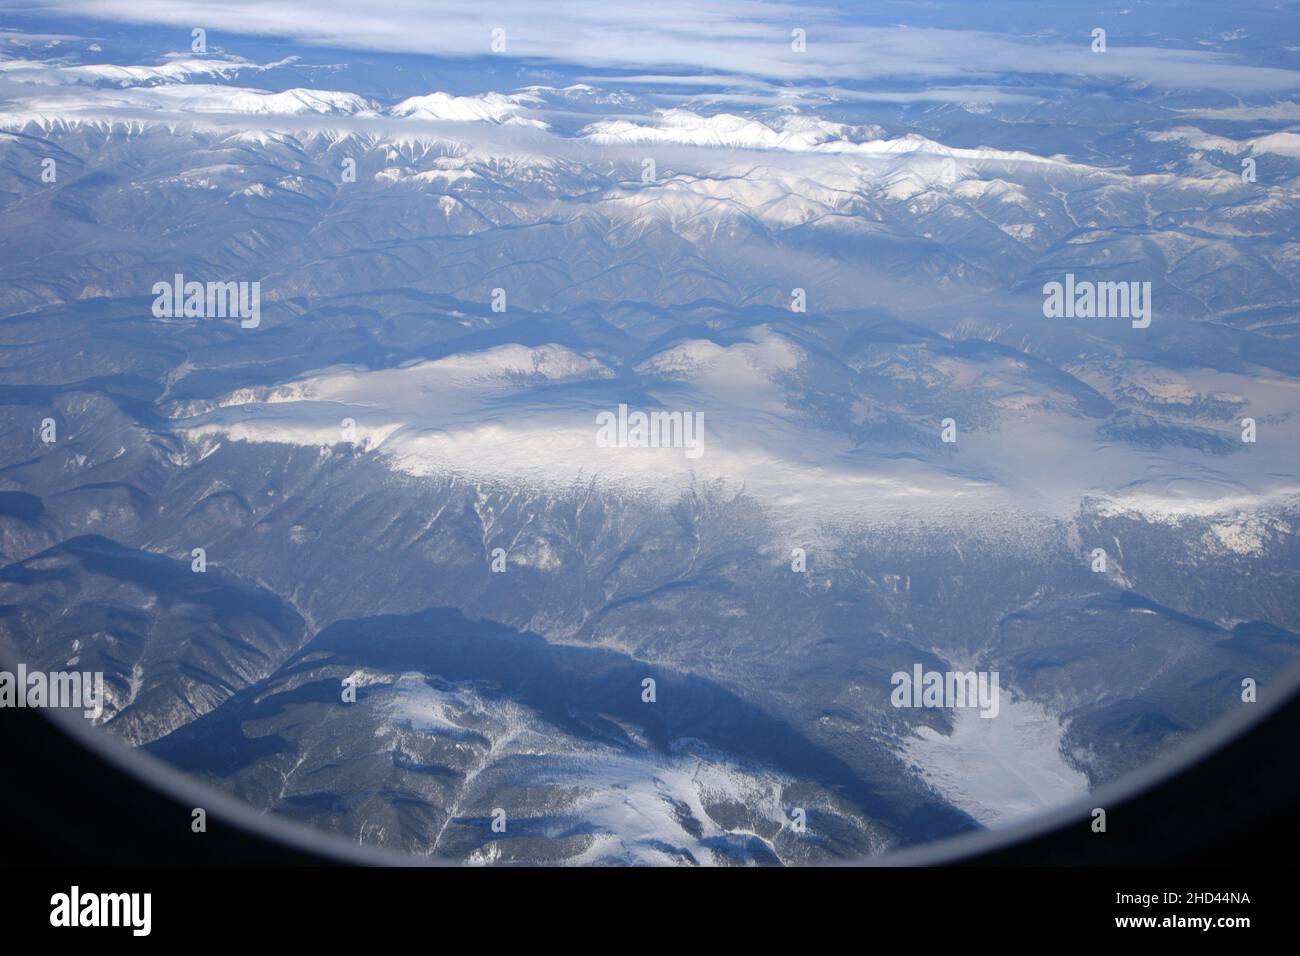 Mongolia sotto la neve visto da un aereo Air China Foto Stock